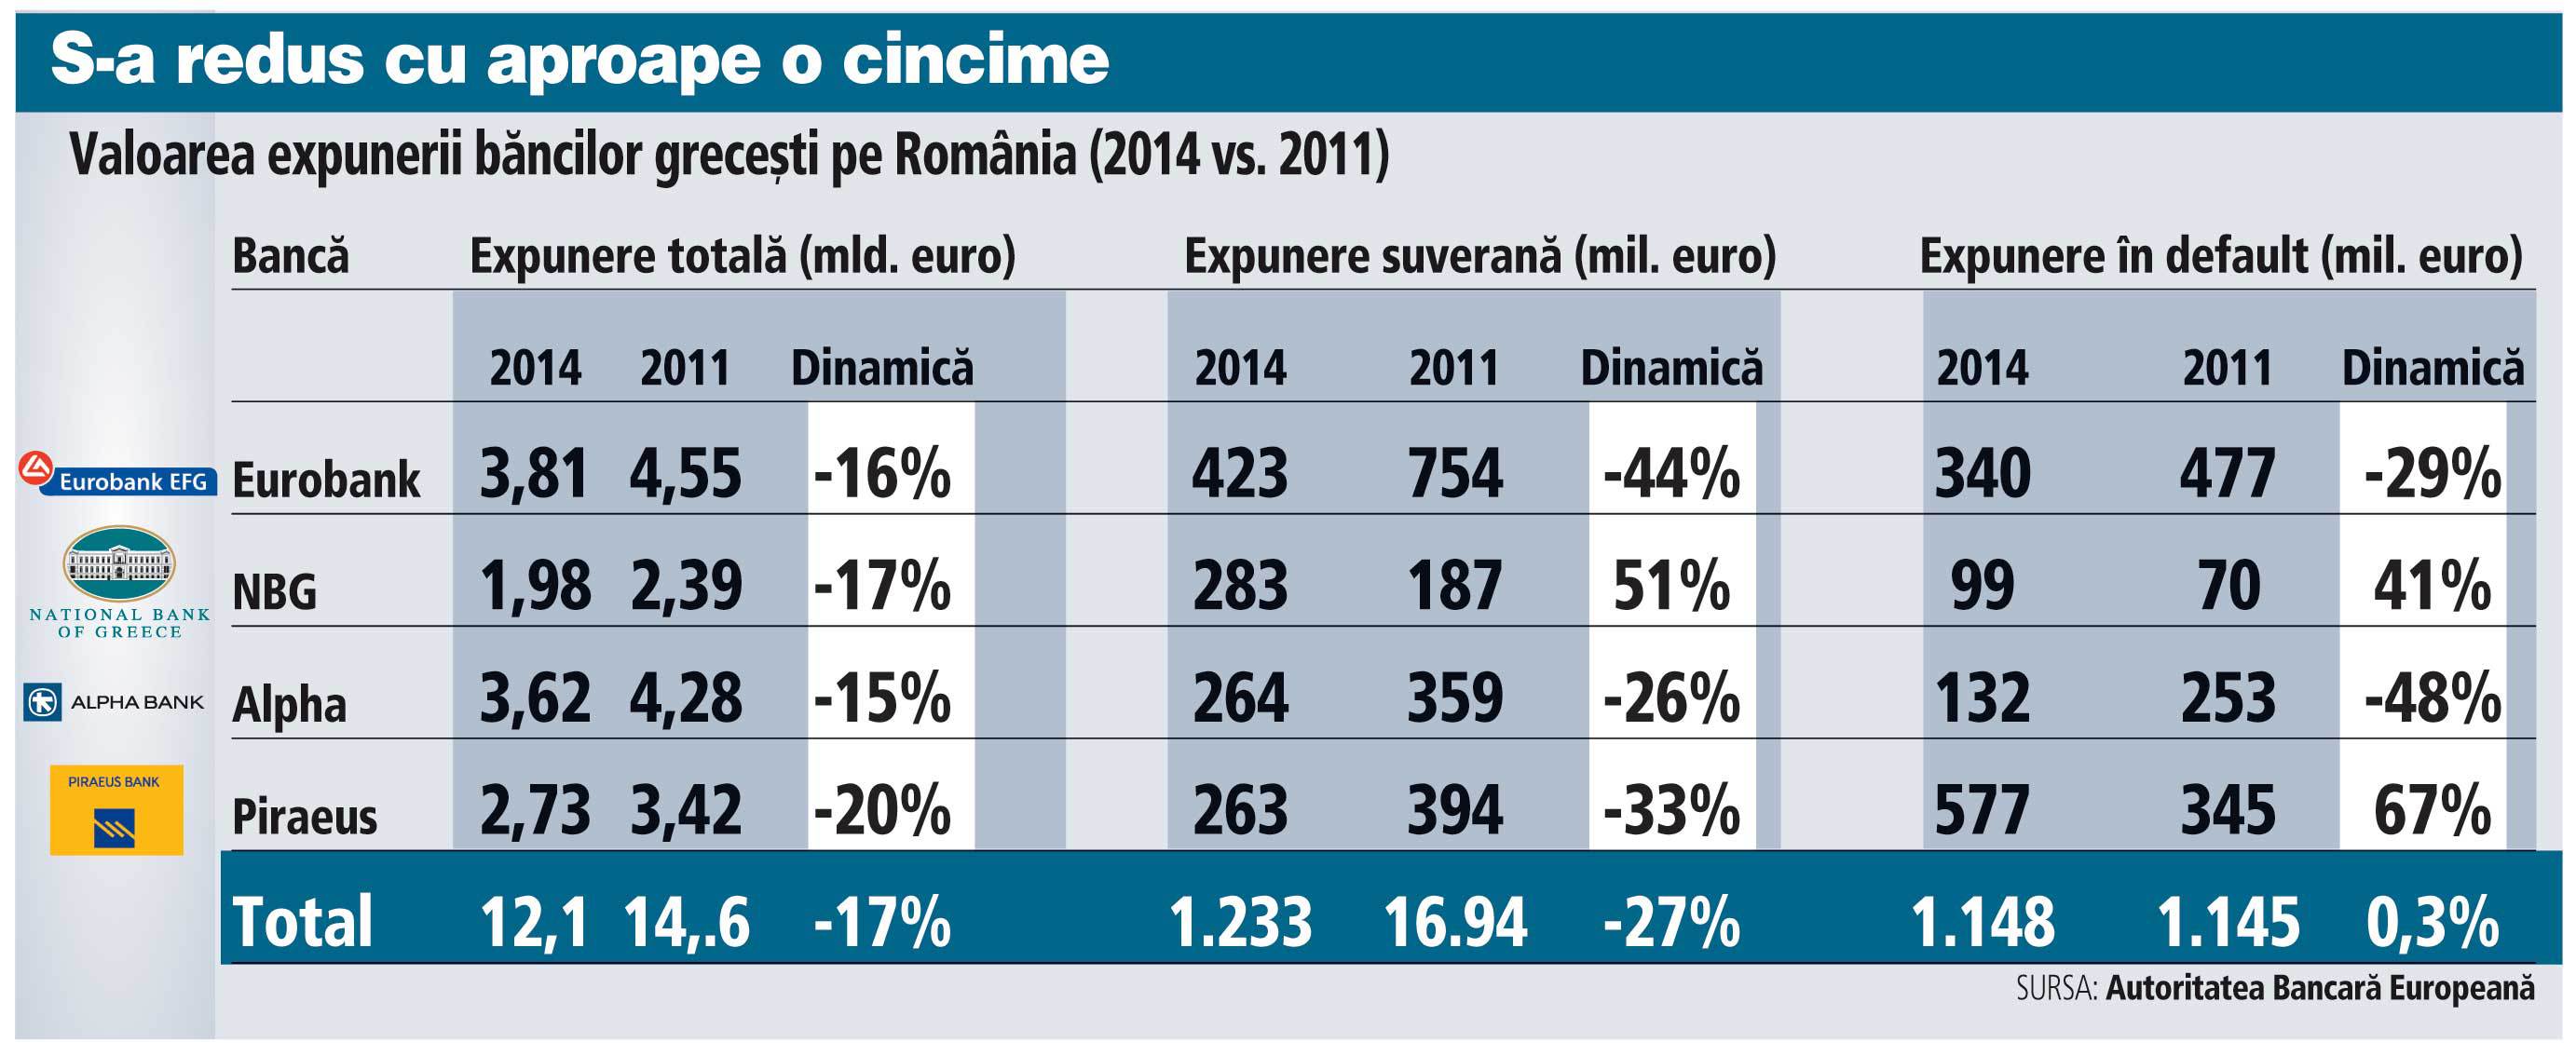 Băncile de la Atena au o expunere totală de 12 miliarde de euro pe România